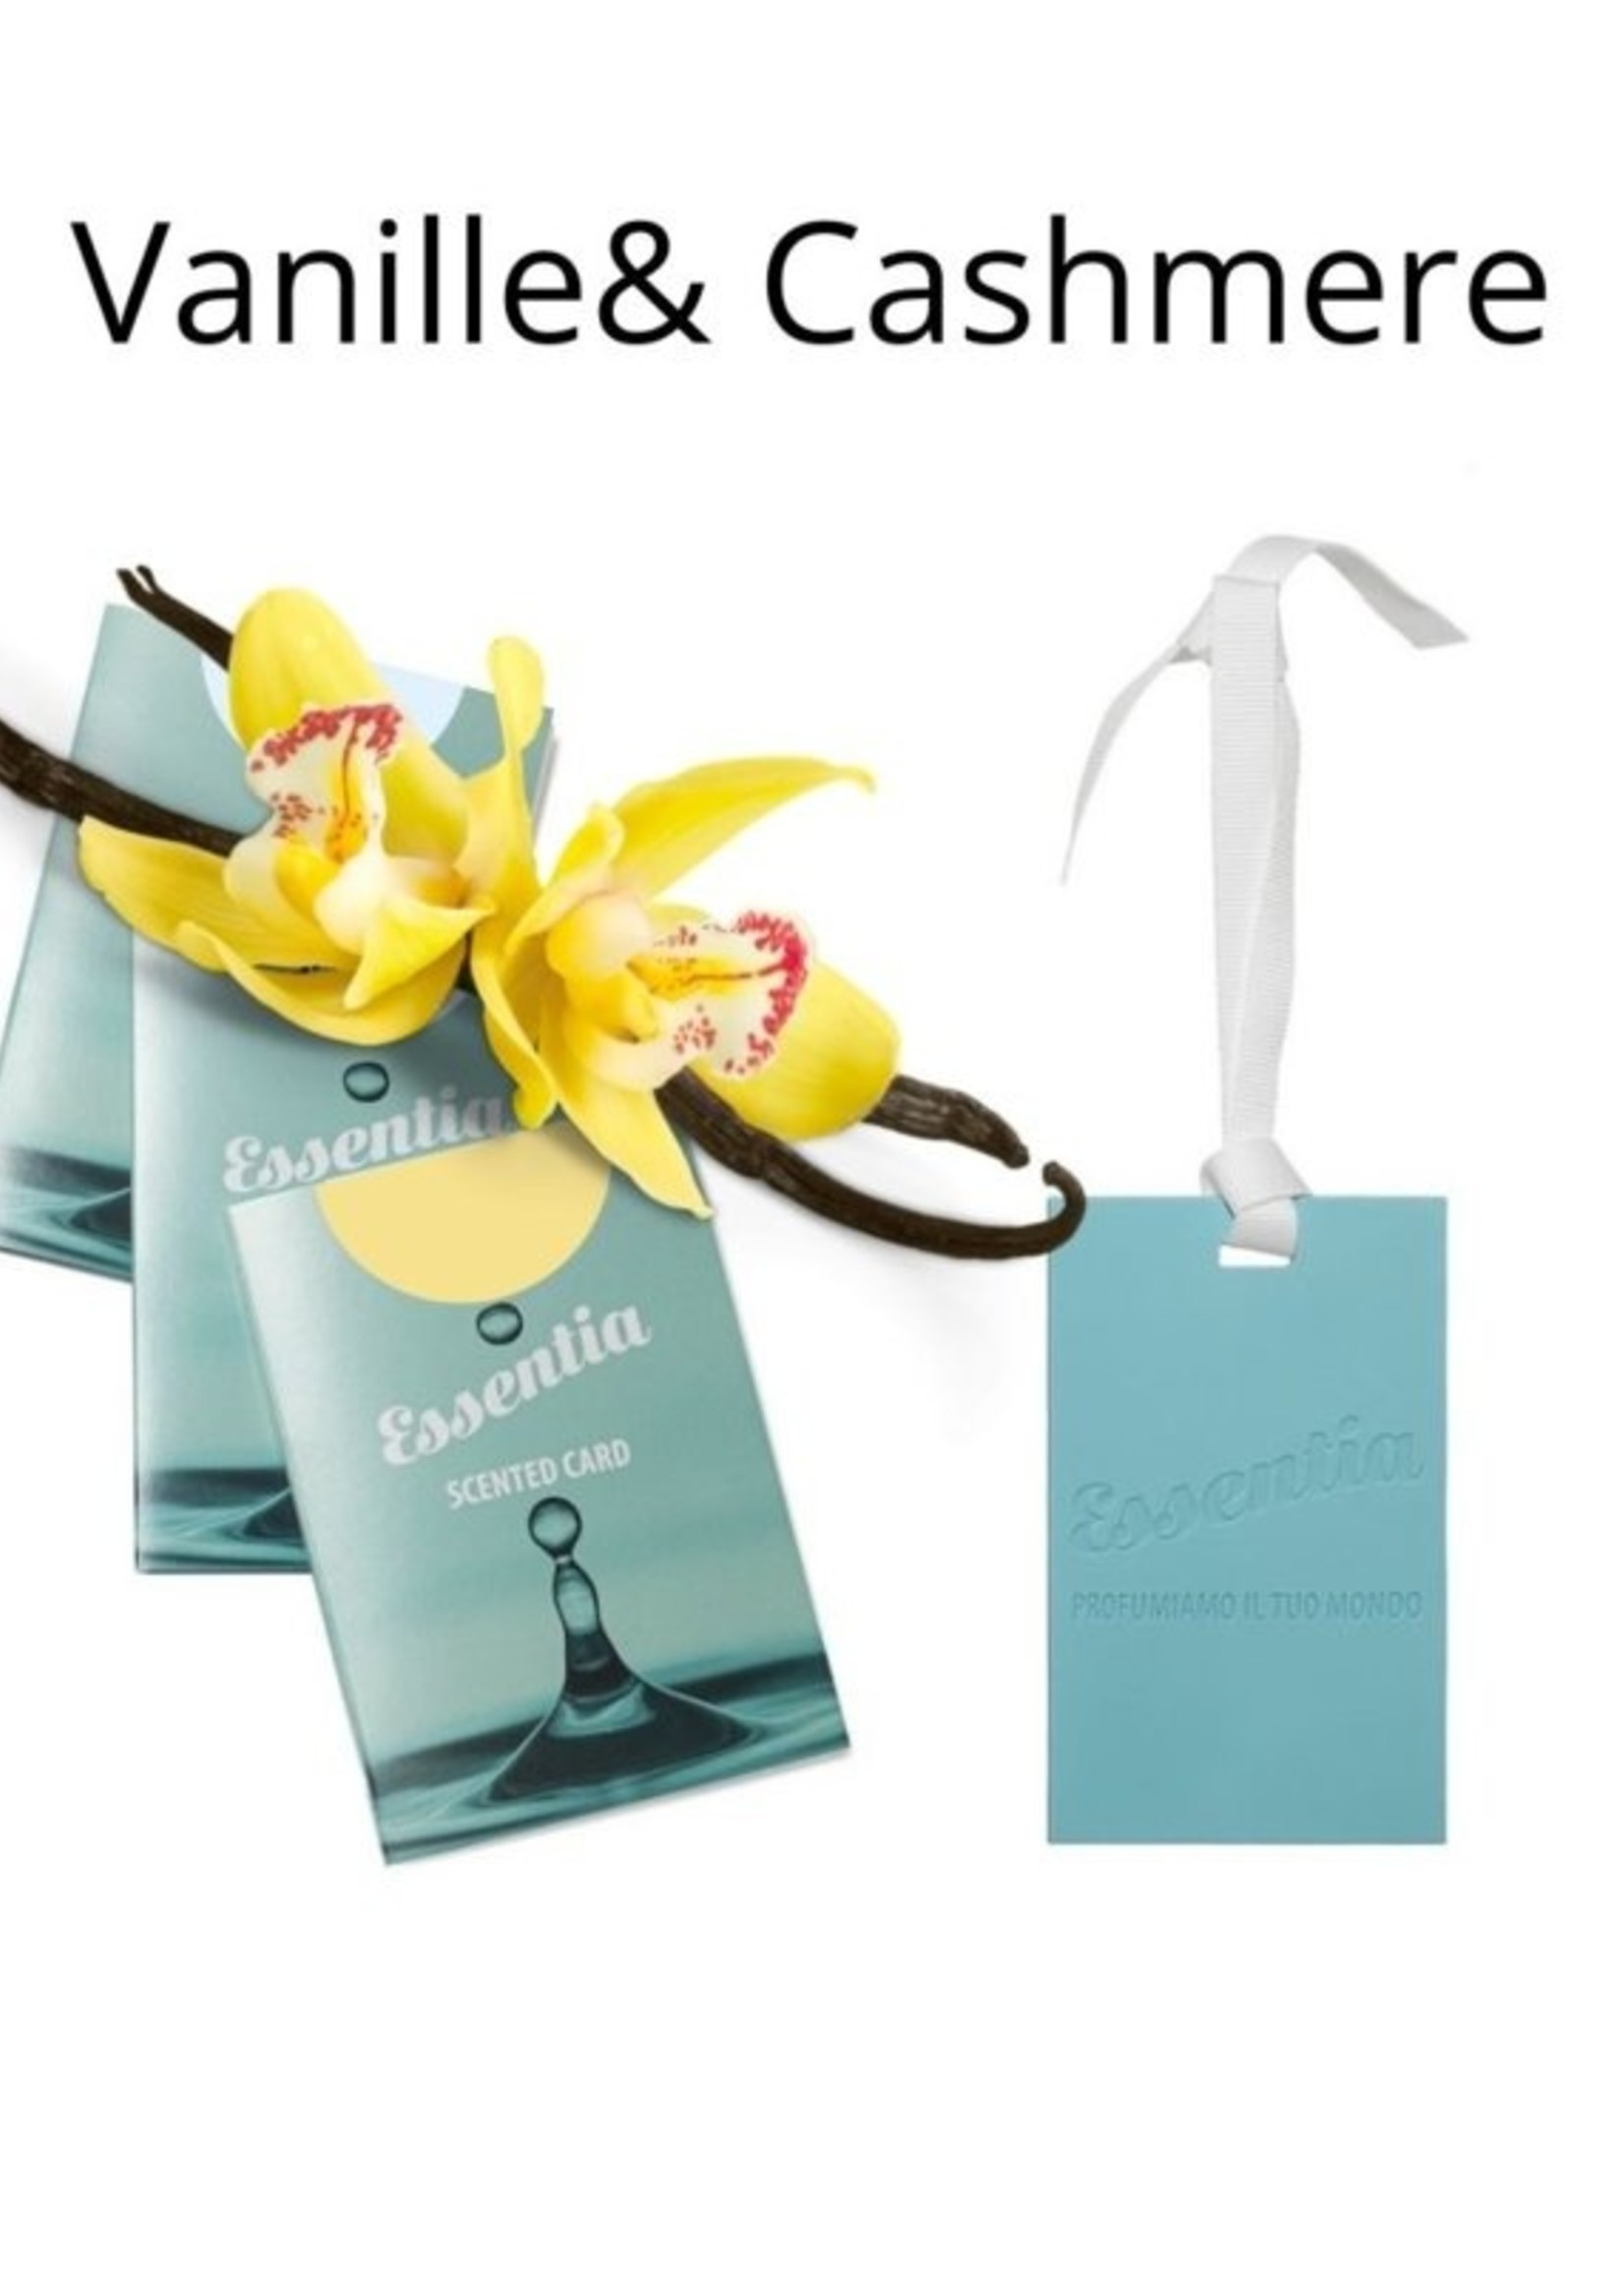 Wasgeluk Geurkaart Vanille Cashmere